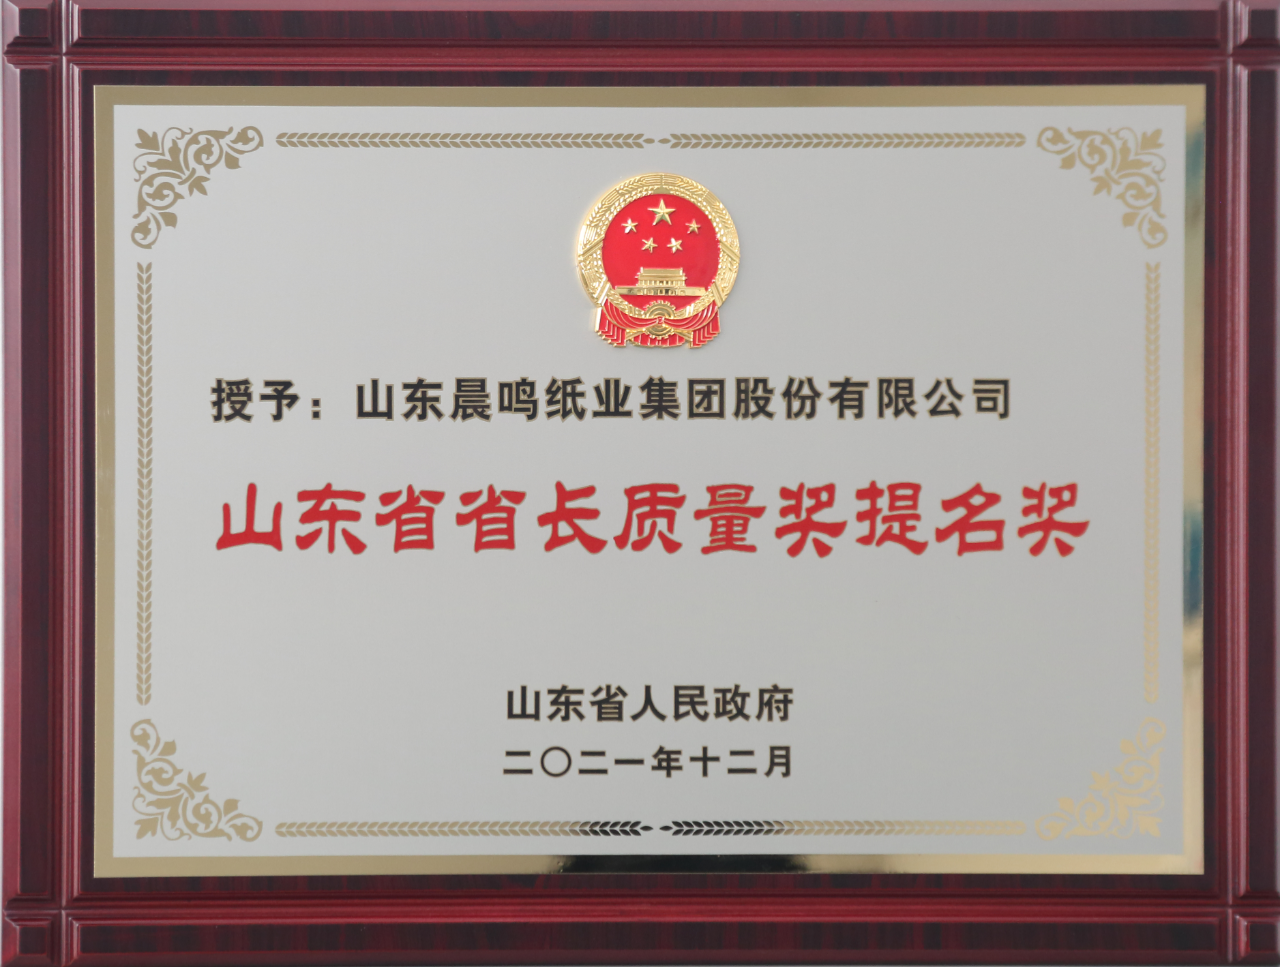 晨鳴集團榮獲第八屆山東省省長質量獎提名獎